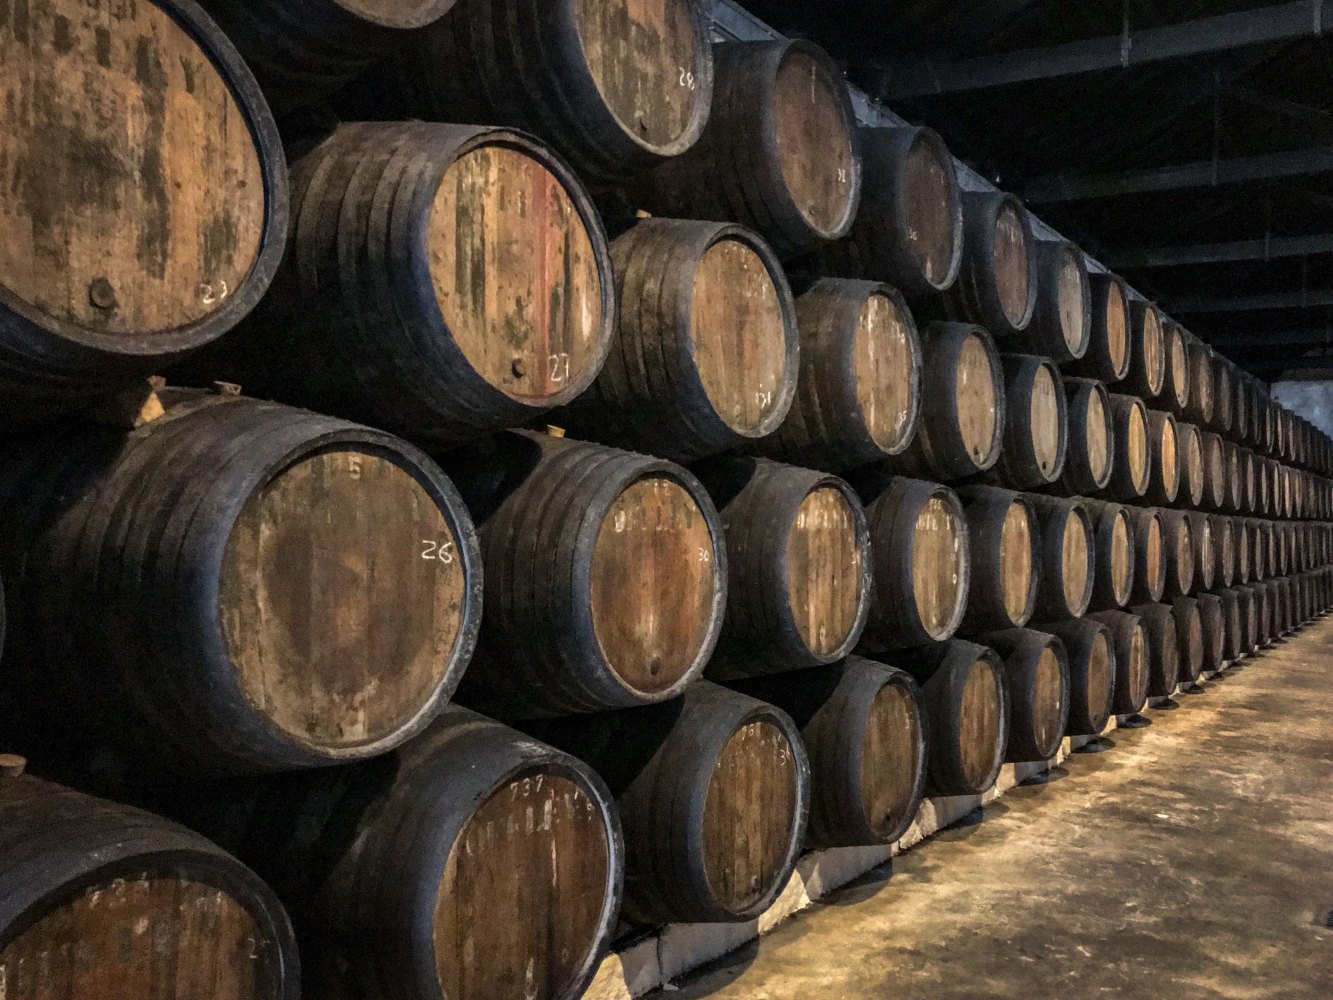 Barris de vinho do Porto